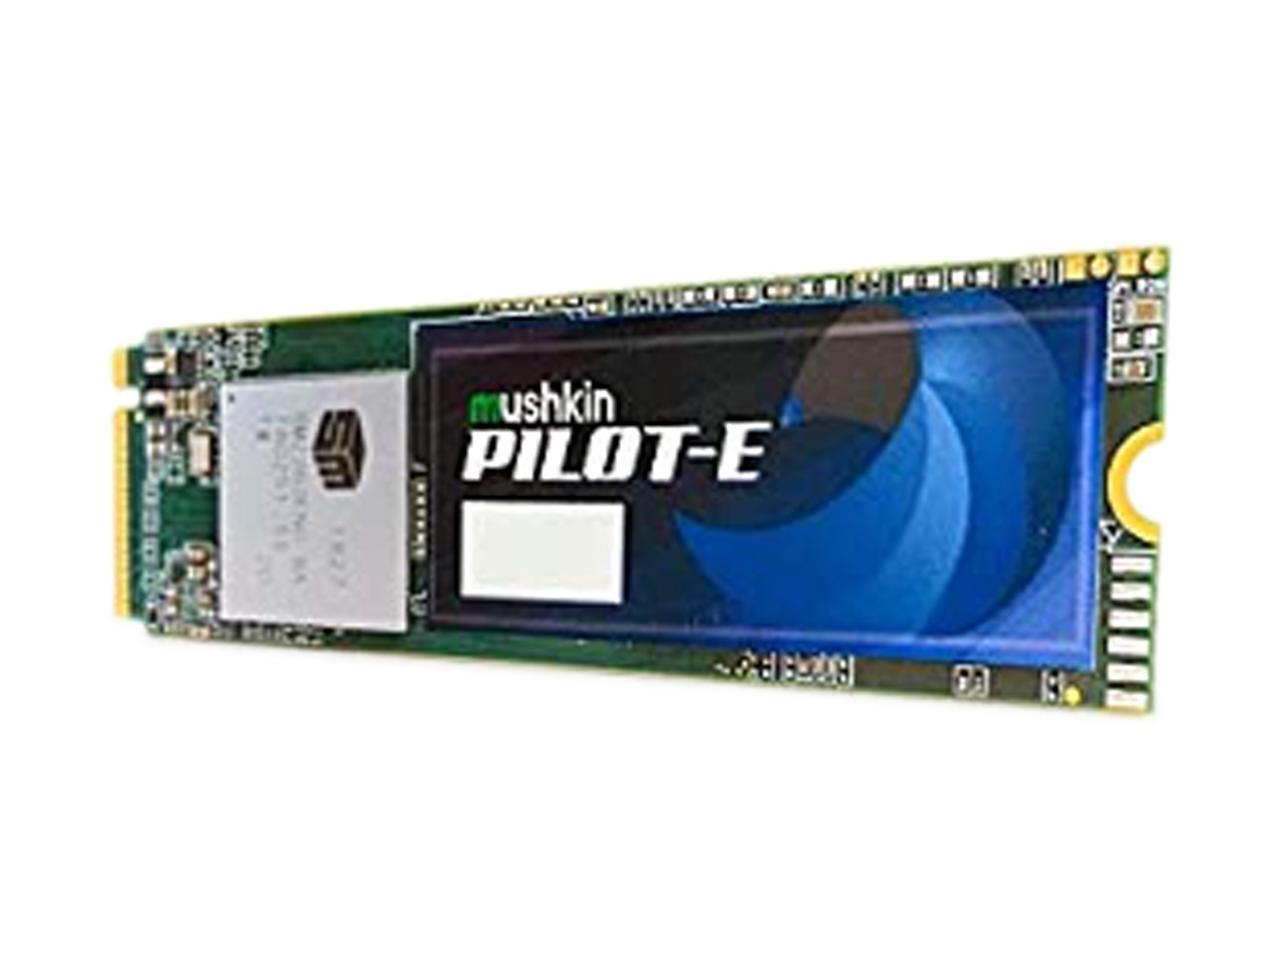 Mushkin Pilot-E M.2 2280 250GB PCIe Gen3 x4 NVMe 1.3 3D TLC Internal Solid State Drive (SSD) MKNSSDPE250GB-D8